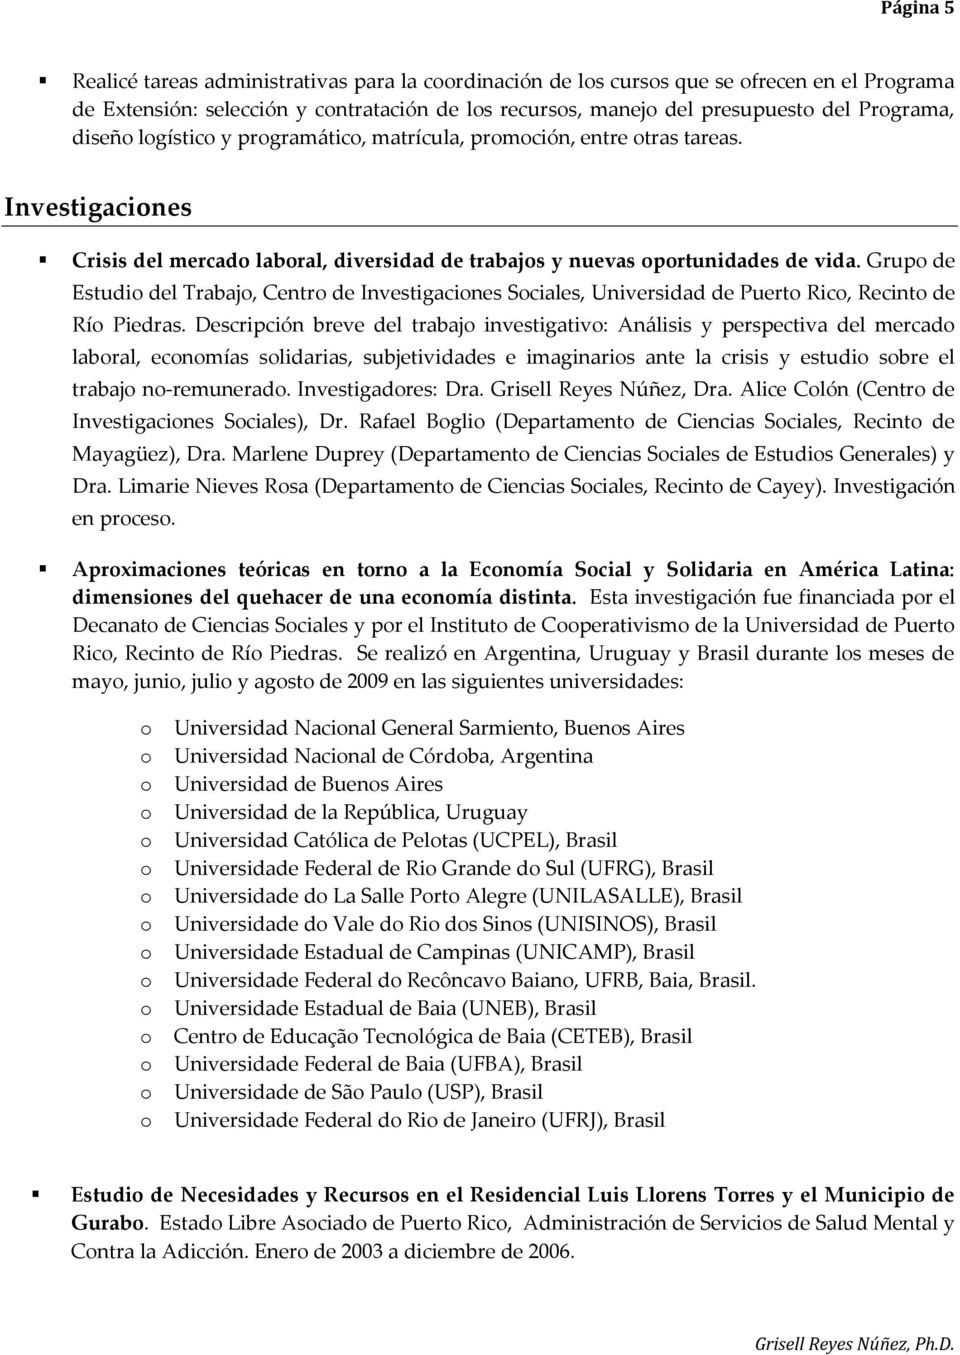 Grup de Estudi del Trabaj, Centr de Investigacines Sciales, Universidad de Puert Ric, Recint de Rí Piedras.